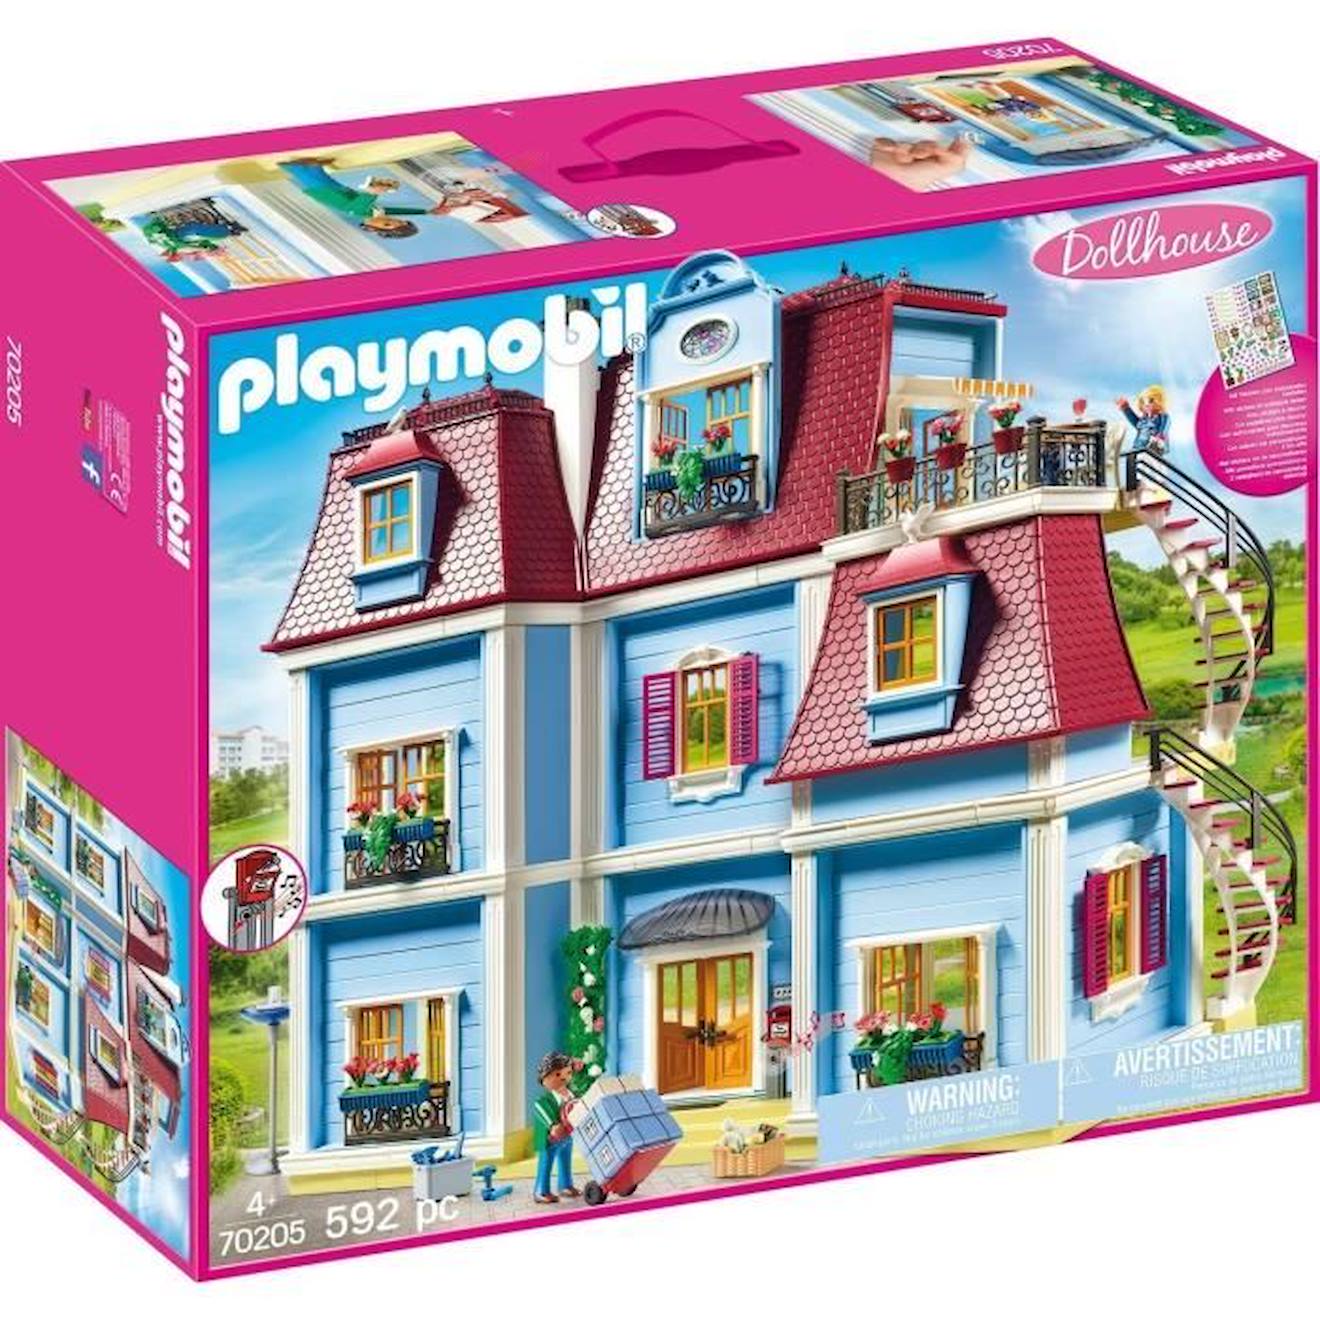 Playmobil - 70205 - Dollhouse La Maison Traditionnelle - Grande Maison Traditionnelle Rose